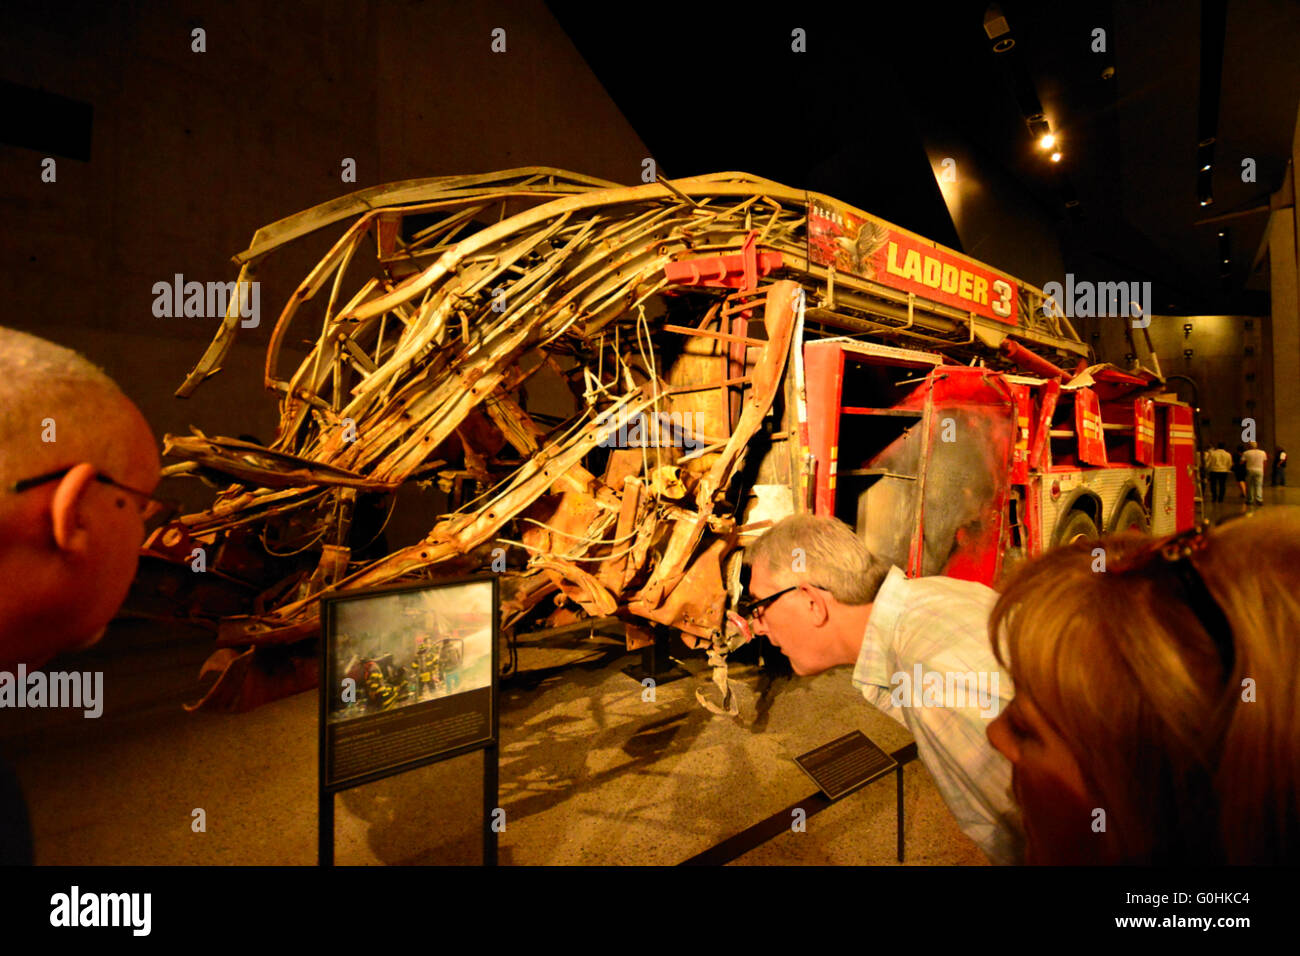 Le reste de l'échelle 3 dans le 11 septembre,Musée,Manhattan New York City, USA Banque D'Images